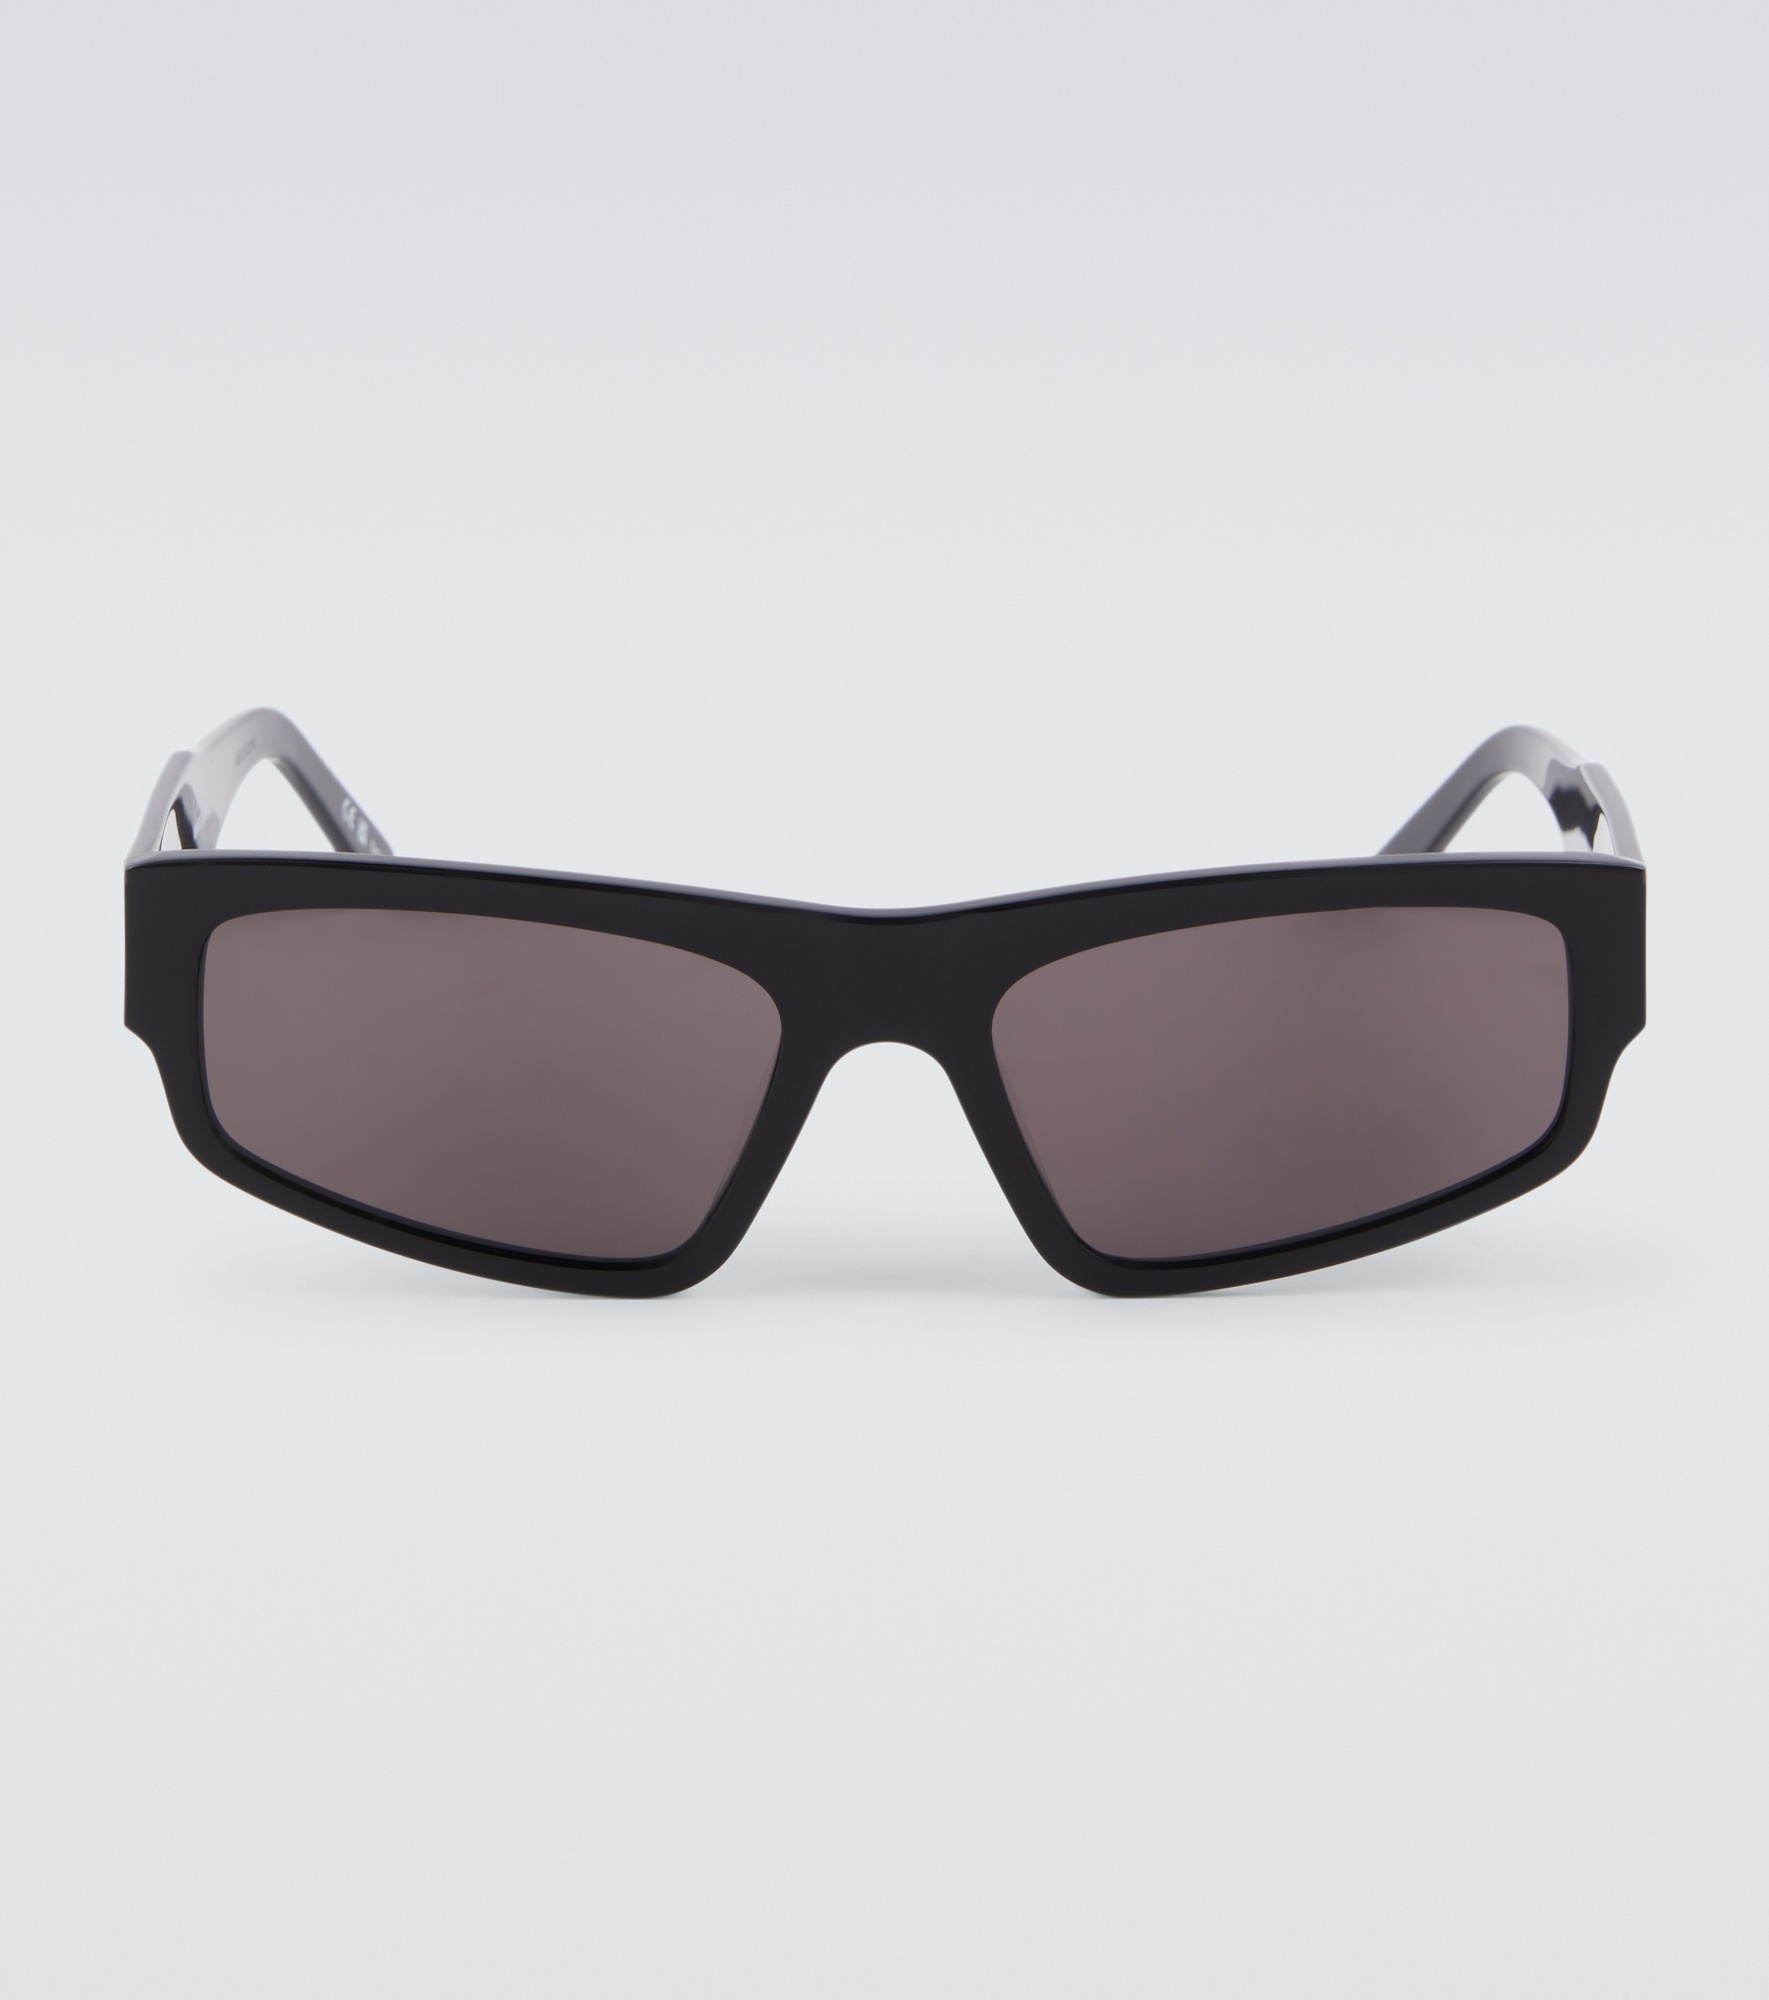 Square sunglasses - 1